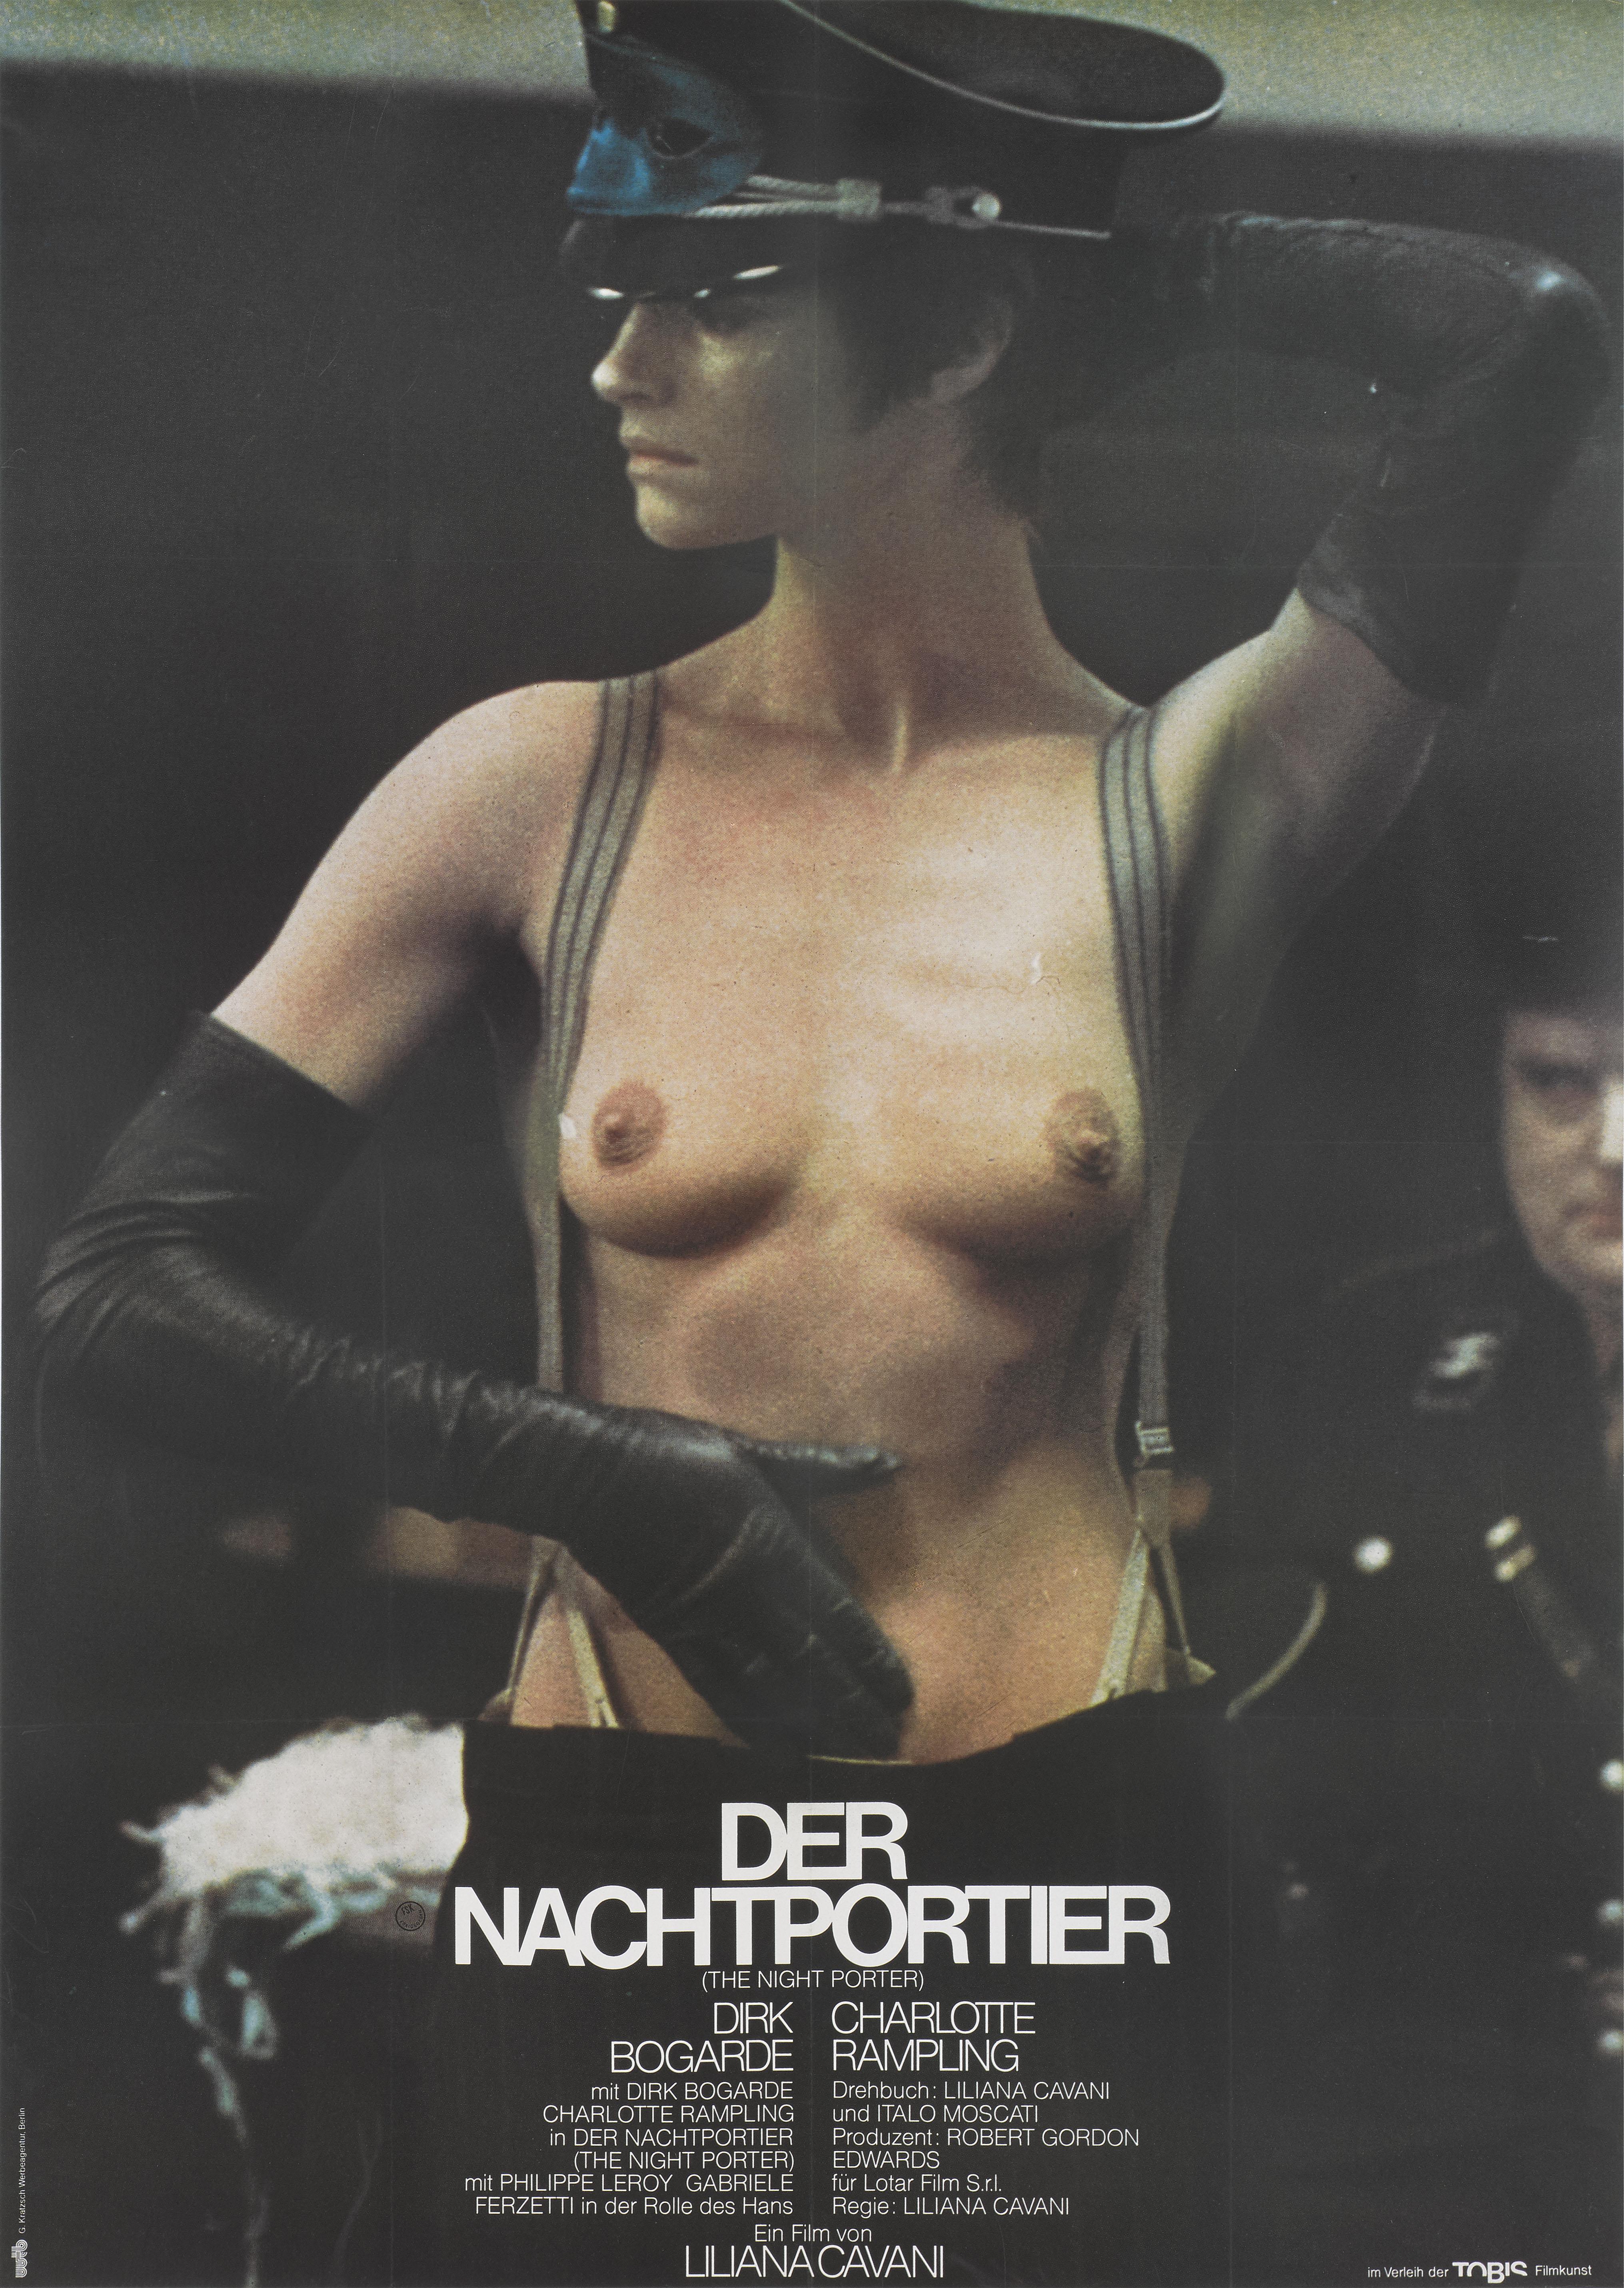 Il s'agit d'une rare affiche allemande grand format pour le drame de 1974 The Night Porter / Der Nachtportier.
Ce film a été réalisé par Liliana Cavani et met en vedette Dirk Bogarde et Charlotte Rampling. Ce film est sorti en Allemagne en